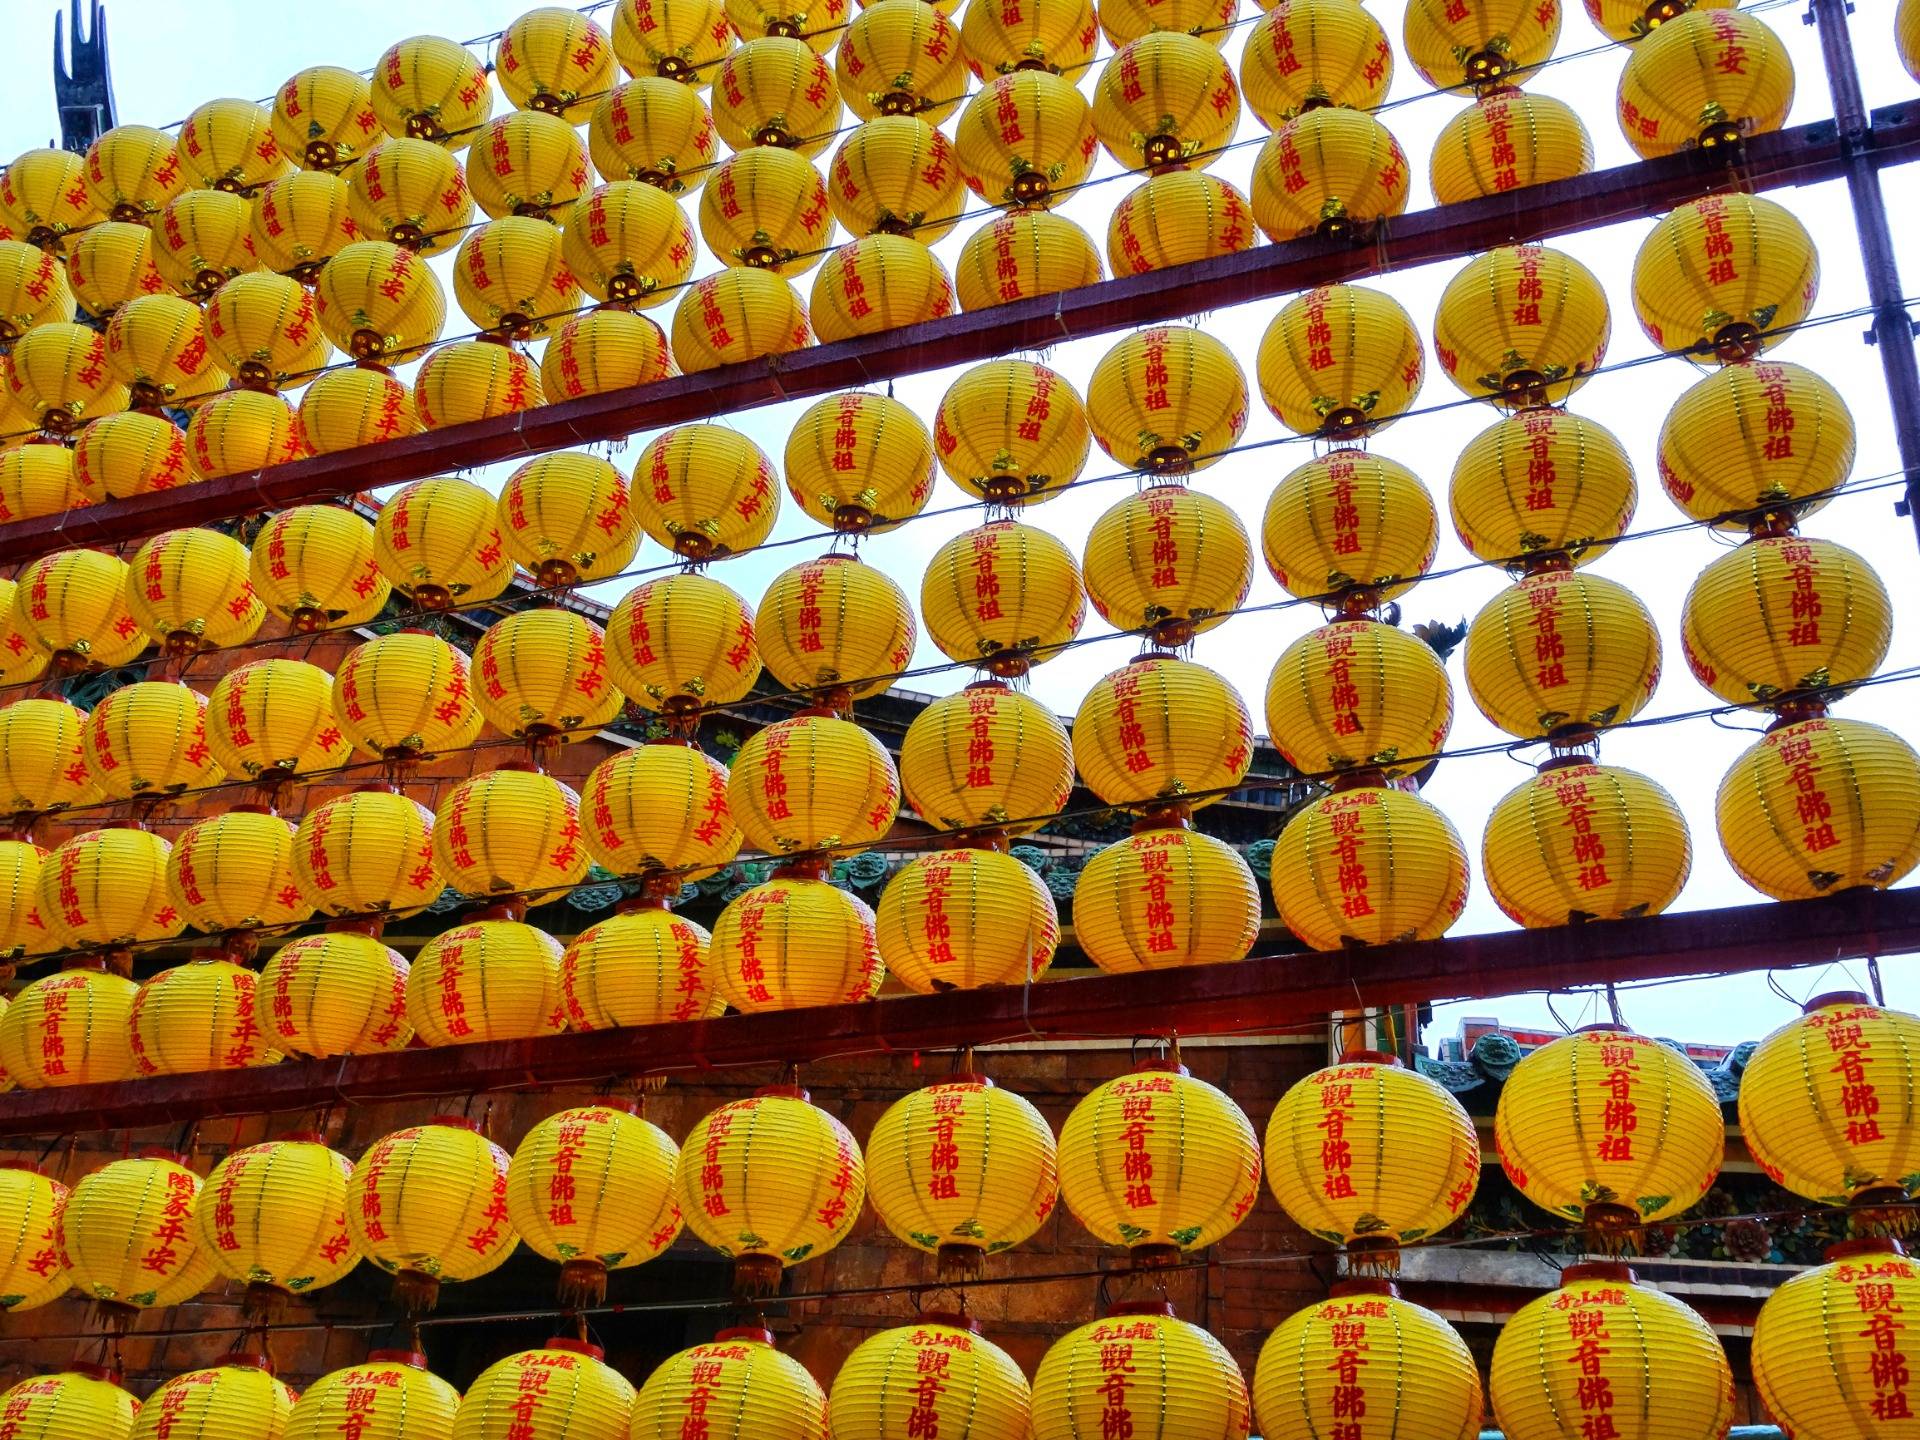 Ballons outside Mengjia